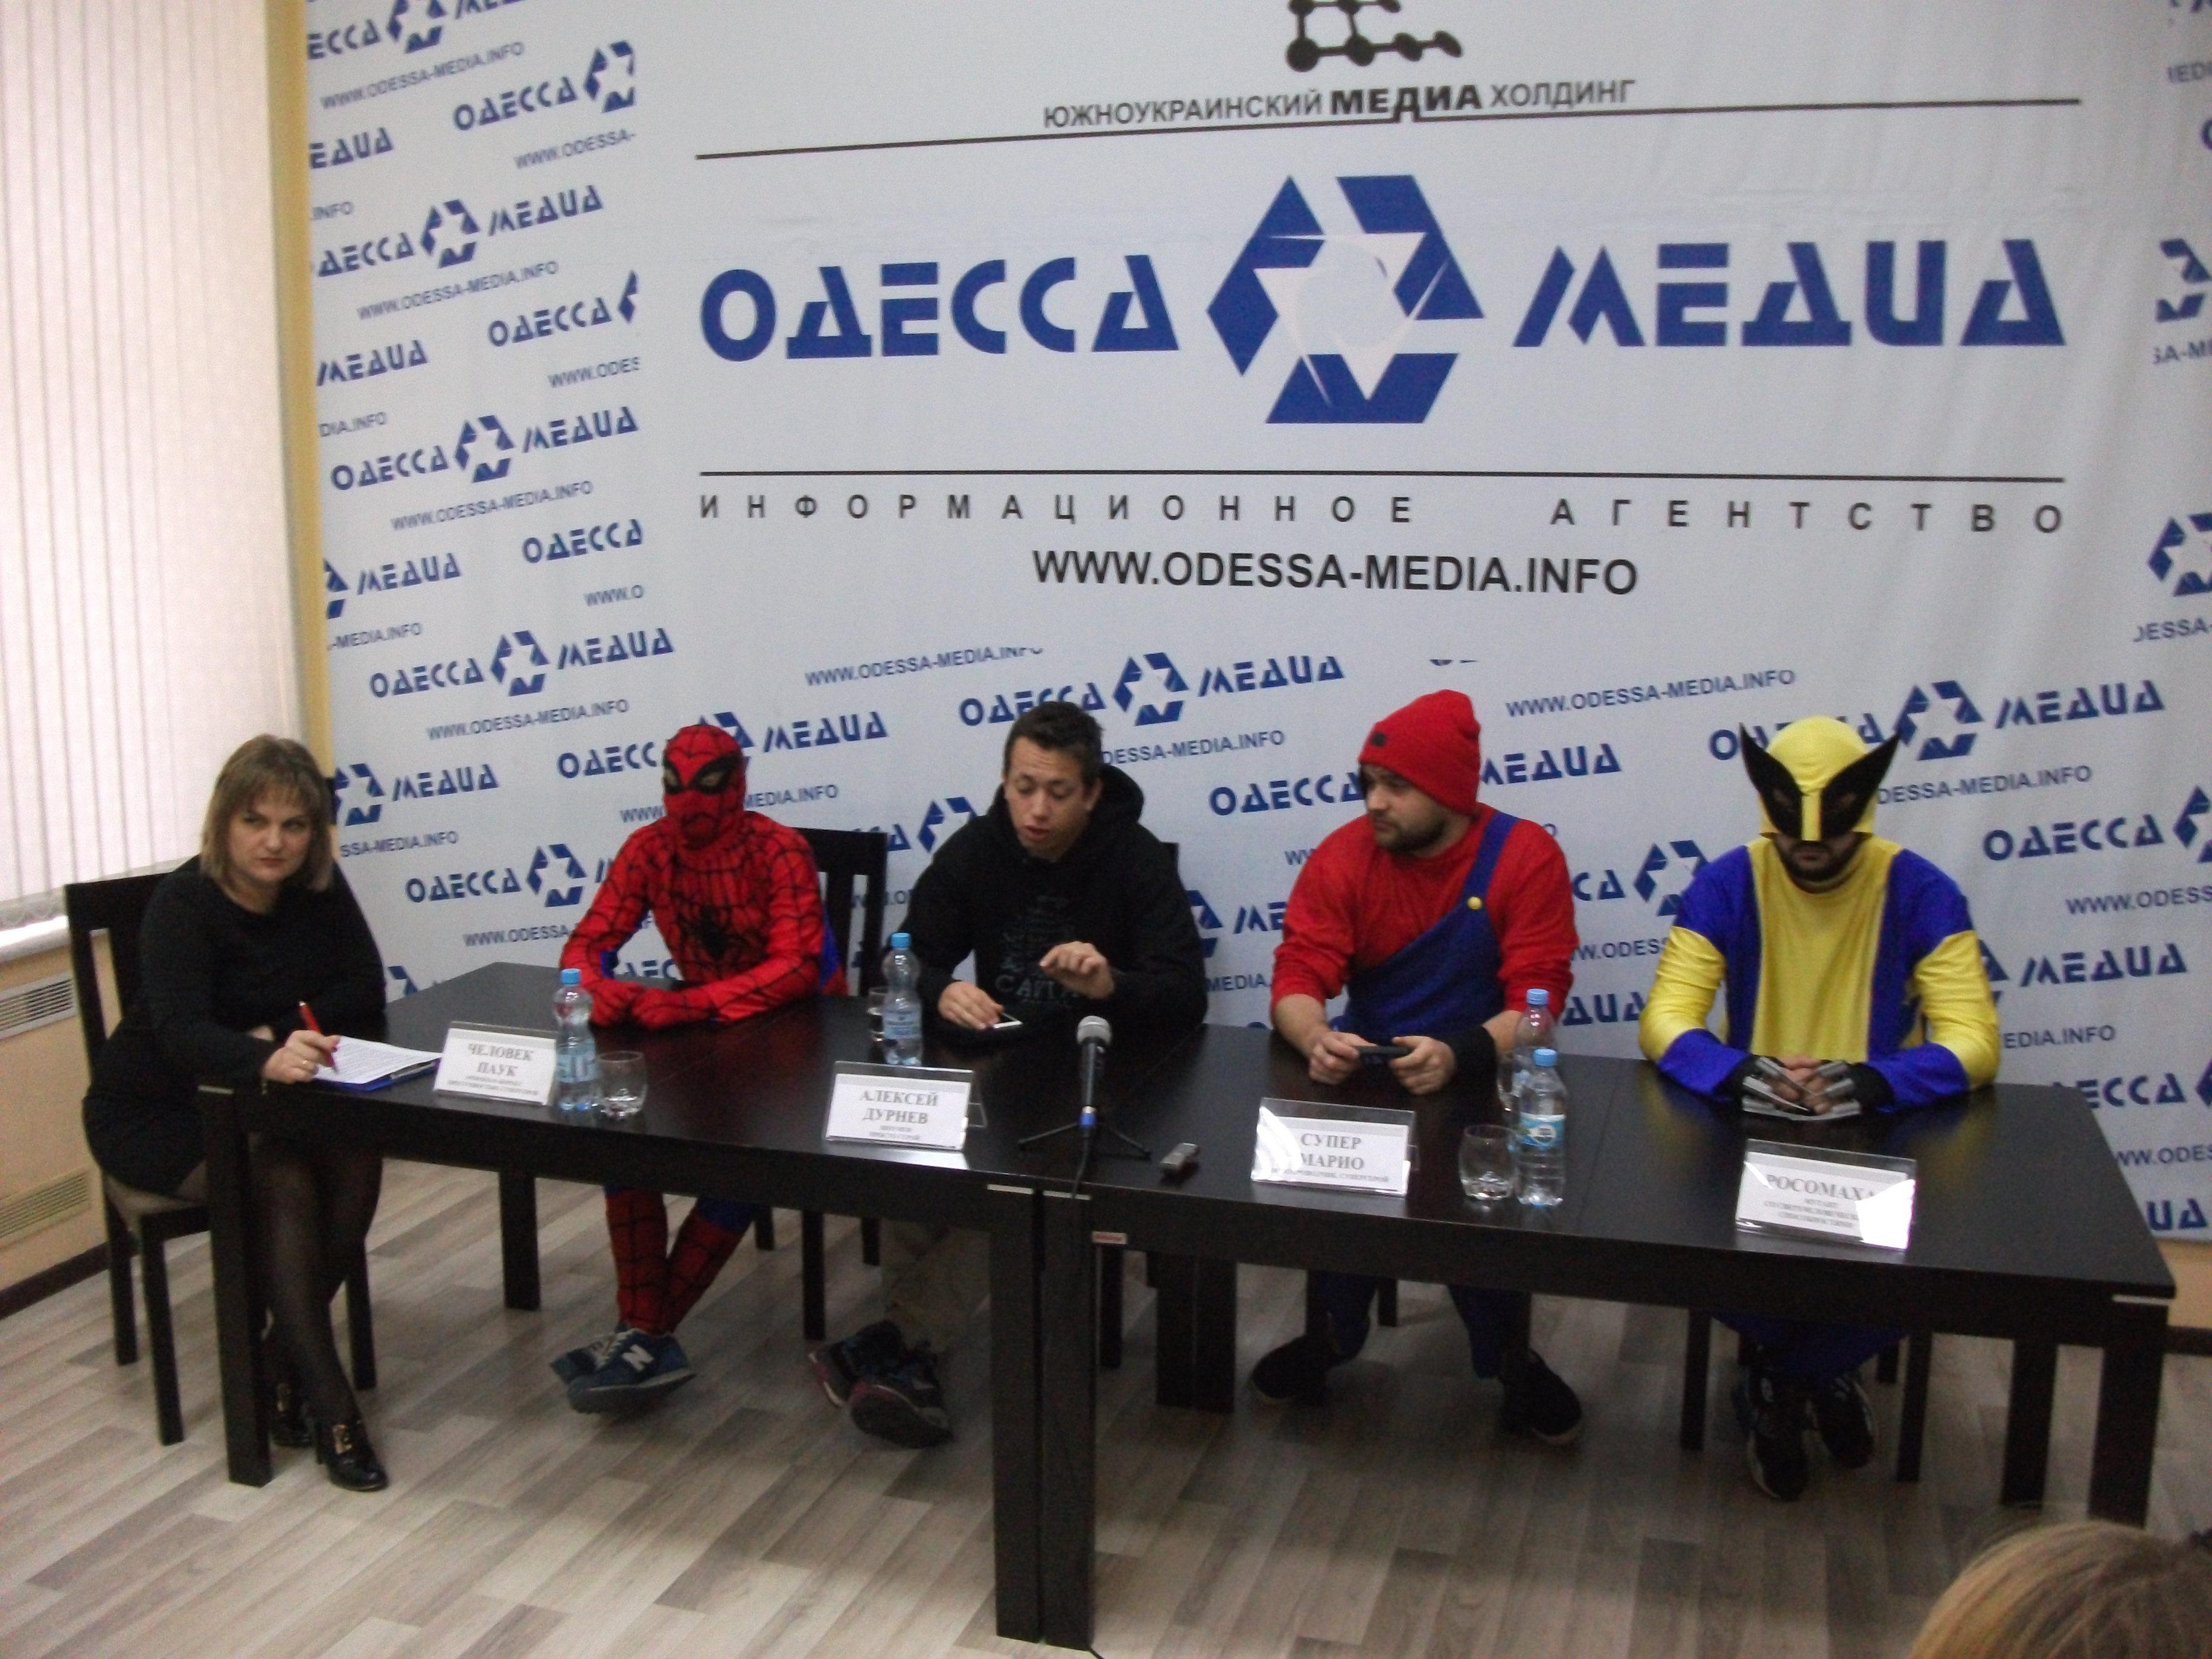 Избирателям 135-го избирательного округа в Одессе предлагают голосовать за «Супергероев»  во главе с телеведущим